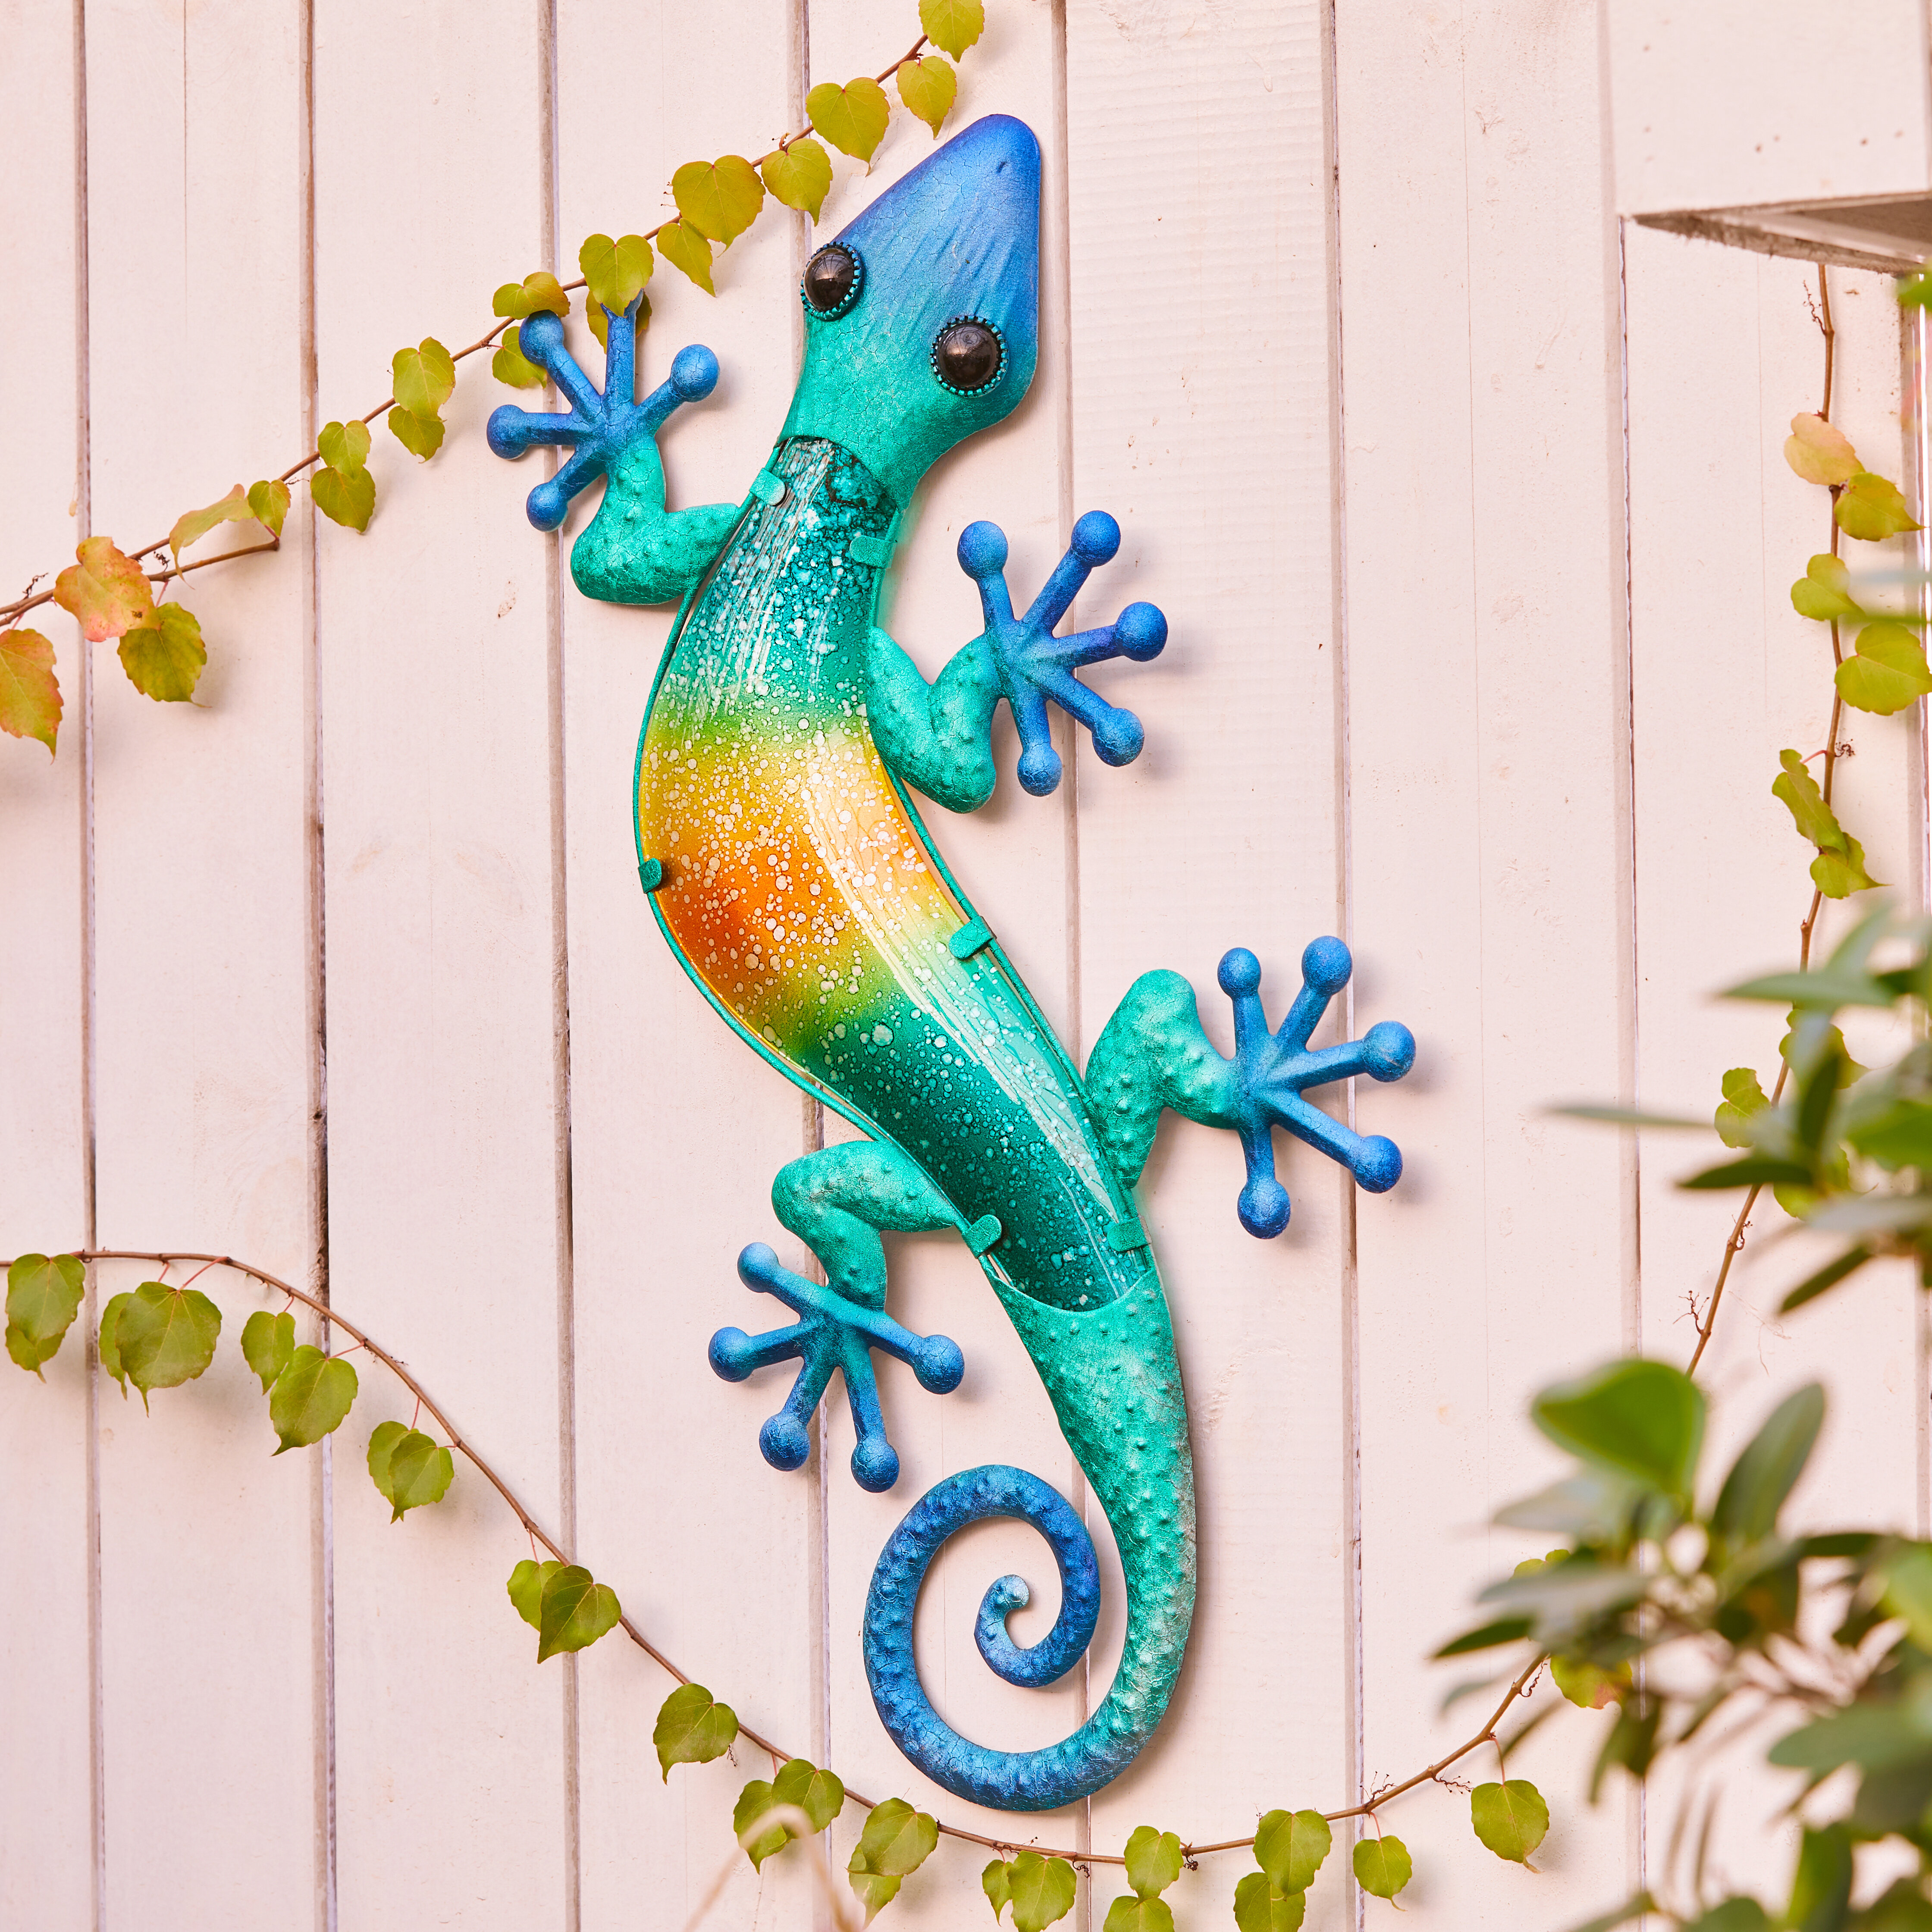 Gecko Metal Wall Decor 3pc Set Lizard Sculpture Living Room Outdoor Garden Art 